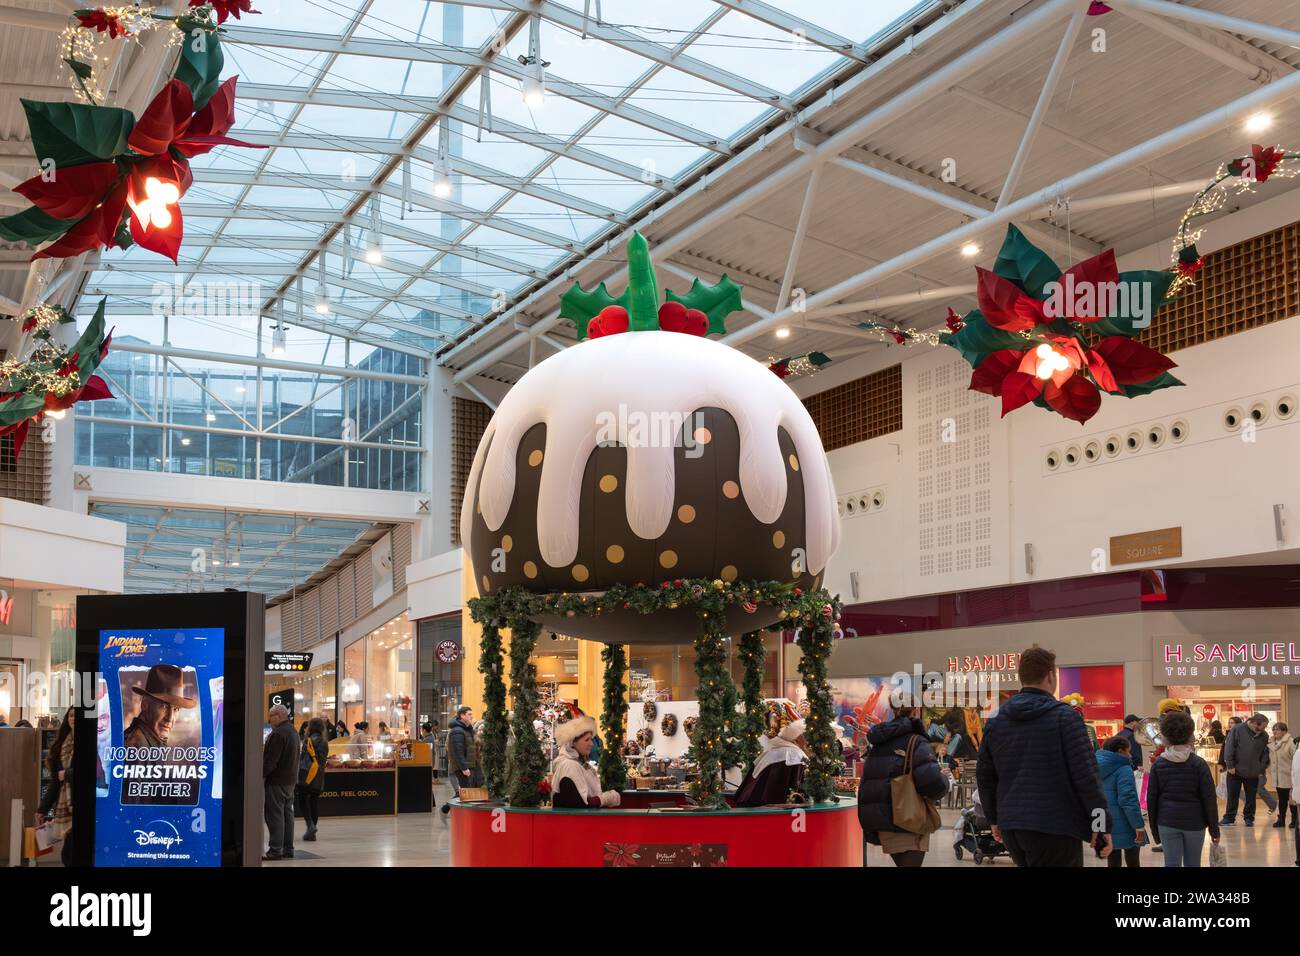 Im Dezember kaufen Shopper Weihnachten am Porchester Square, dem Festival Place, mit einem riesigen Weihnachtspudding-Dekor. Basingstoke, Großbritannien Stockfoto